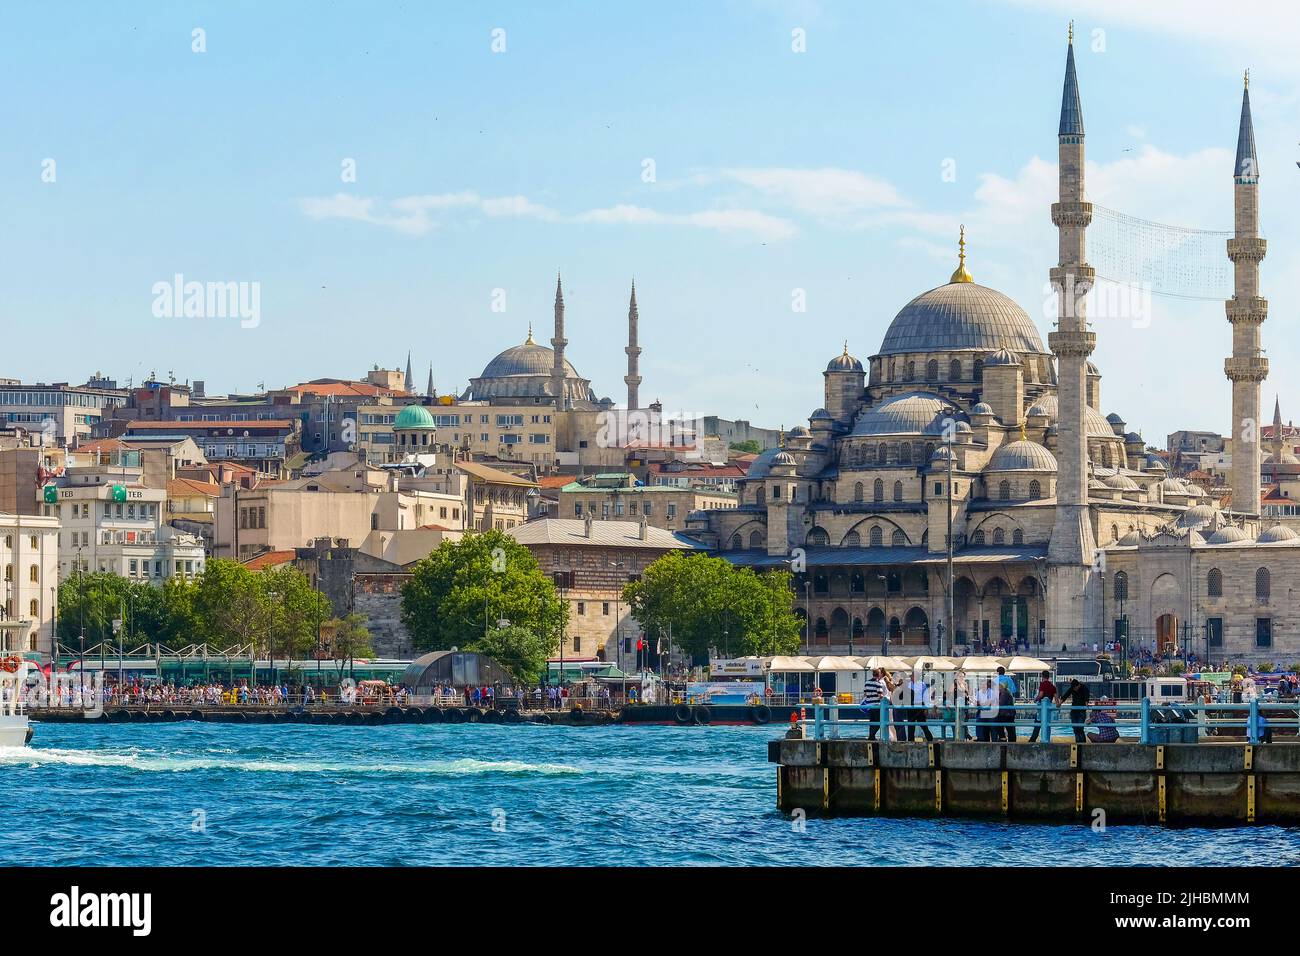 İstanbul Turchia, 07 12 2014: La grande moschea Fatih (in turco: Fatih Camii, Moschea del Conquistatore) è una moschea ottomana nei pressi di Fevzi Paşa Caddes Foto Stock